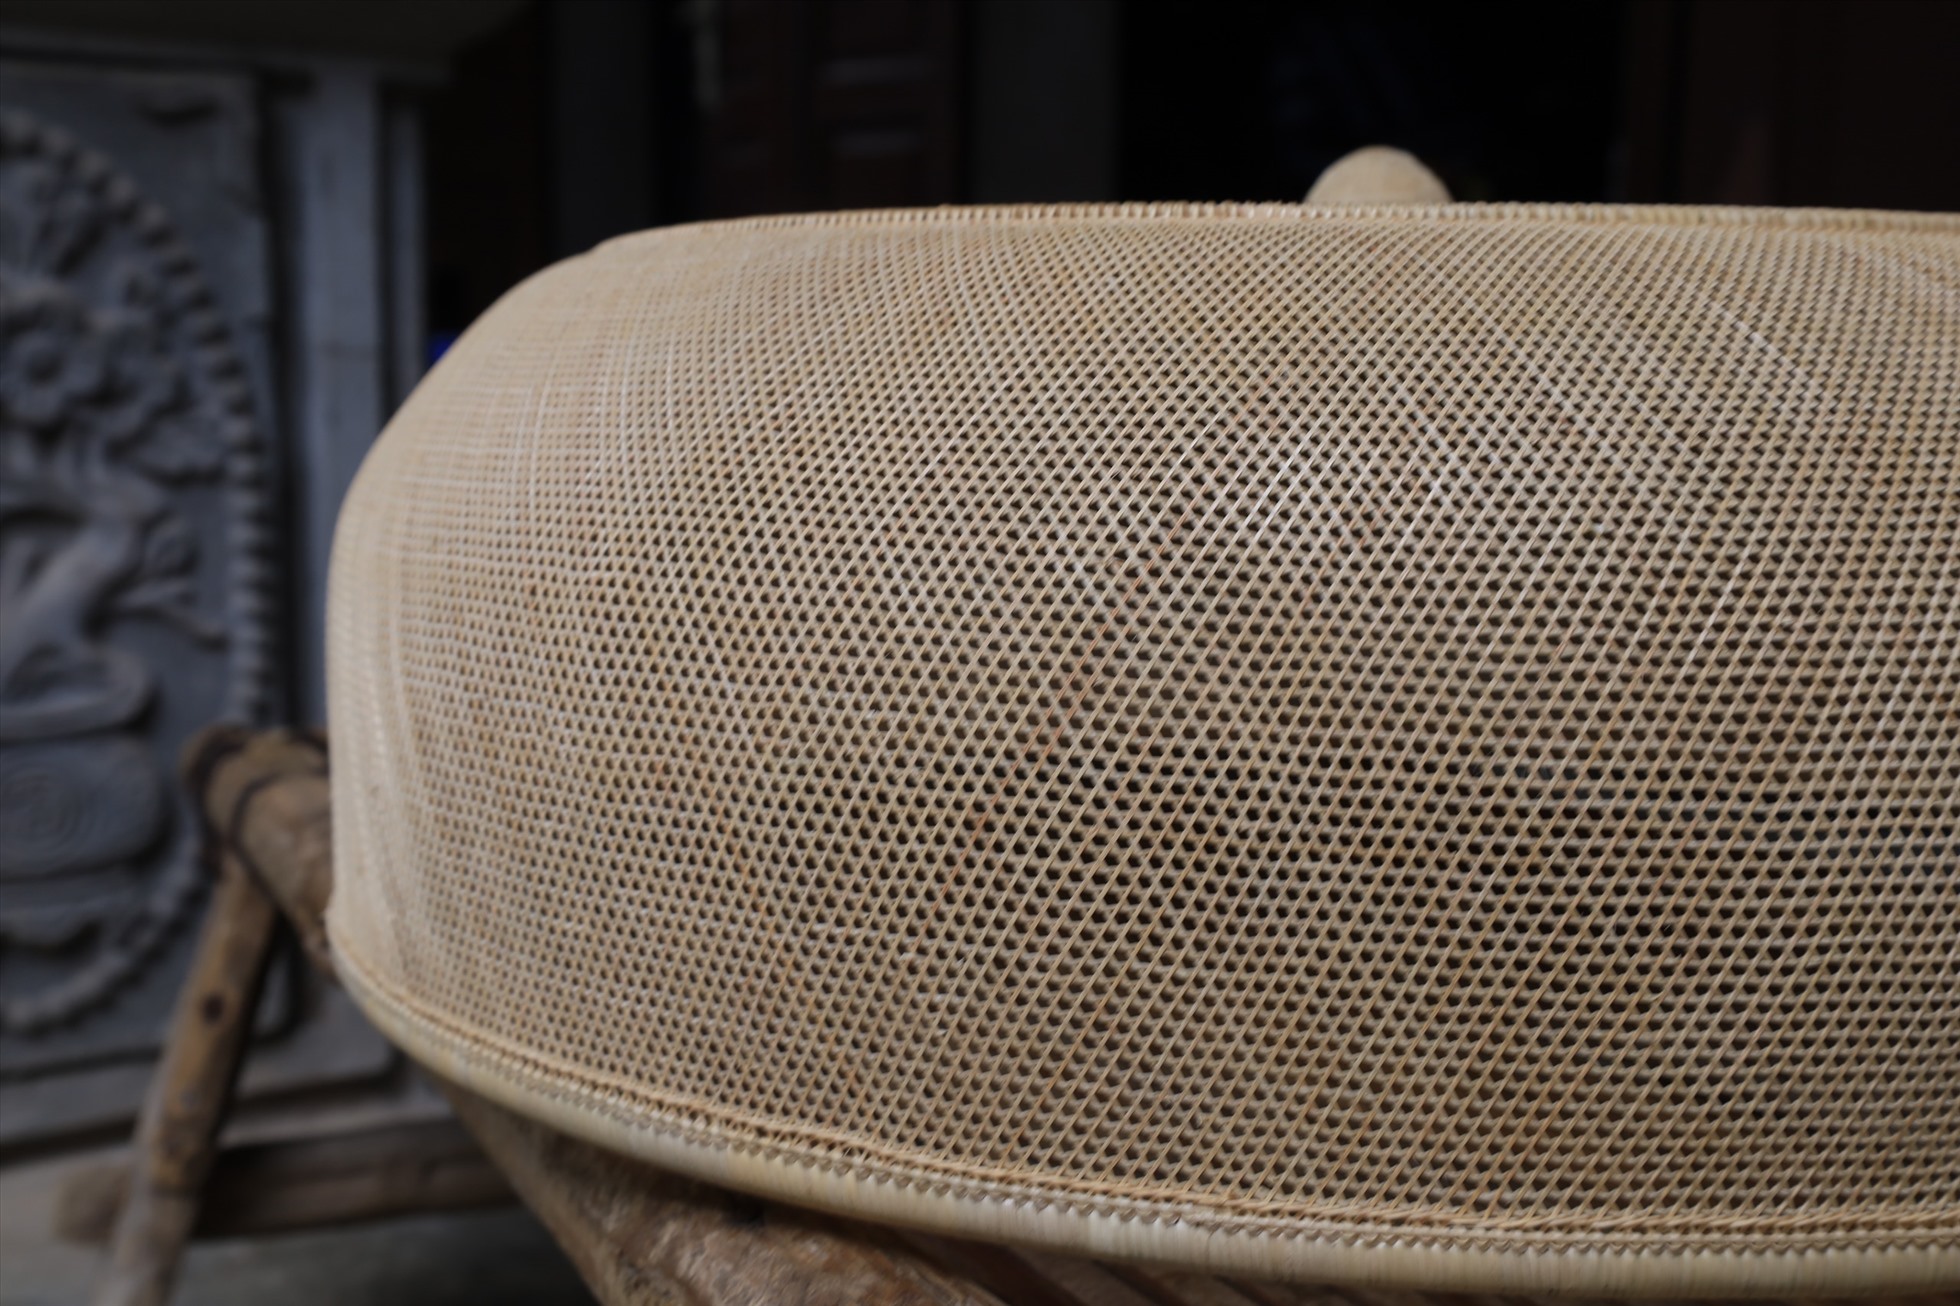 Những sợi nan đan nhau như chiếc màn tuyn - loại màn ngủ có công dụng chống muỗi. Ảnh: Nguyễn Thúy